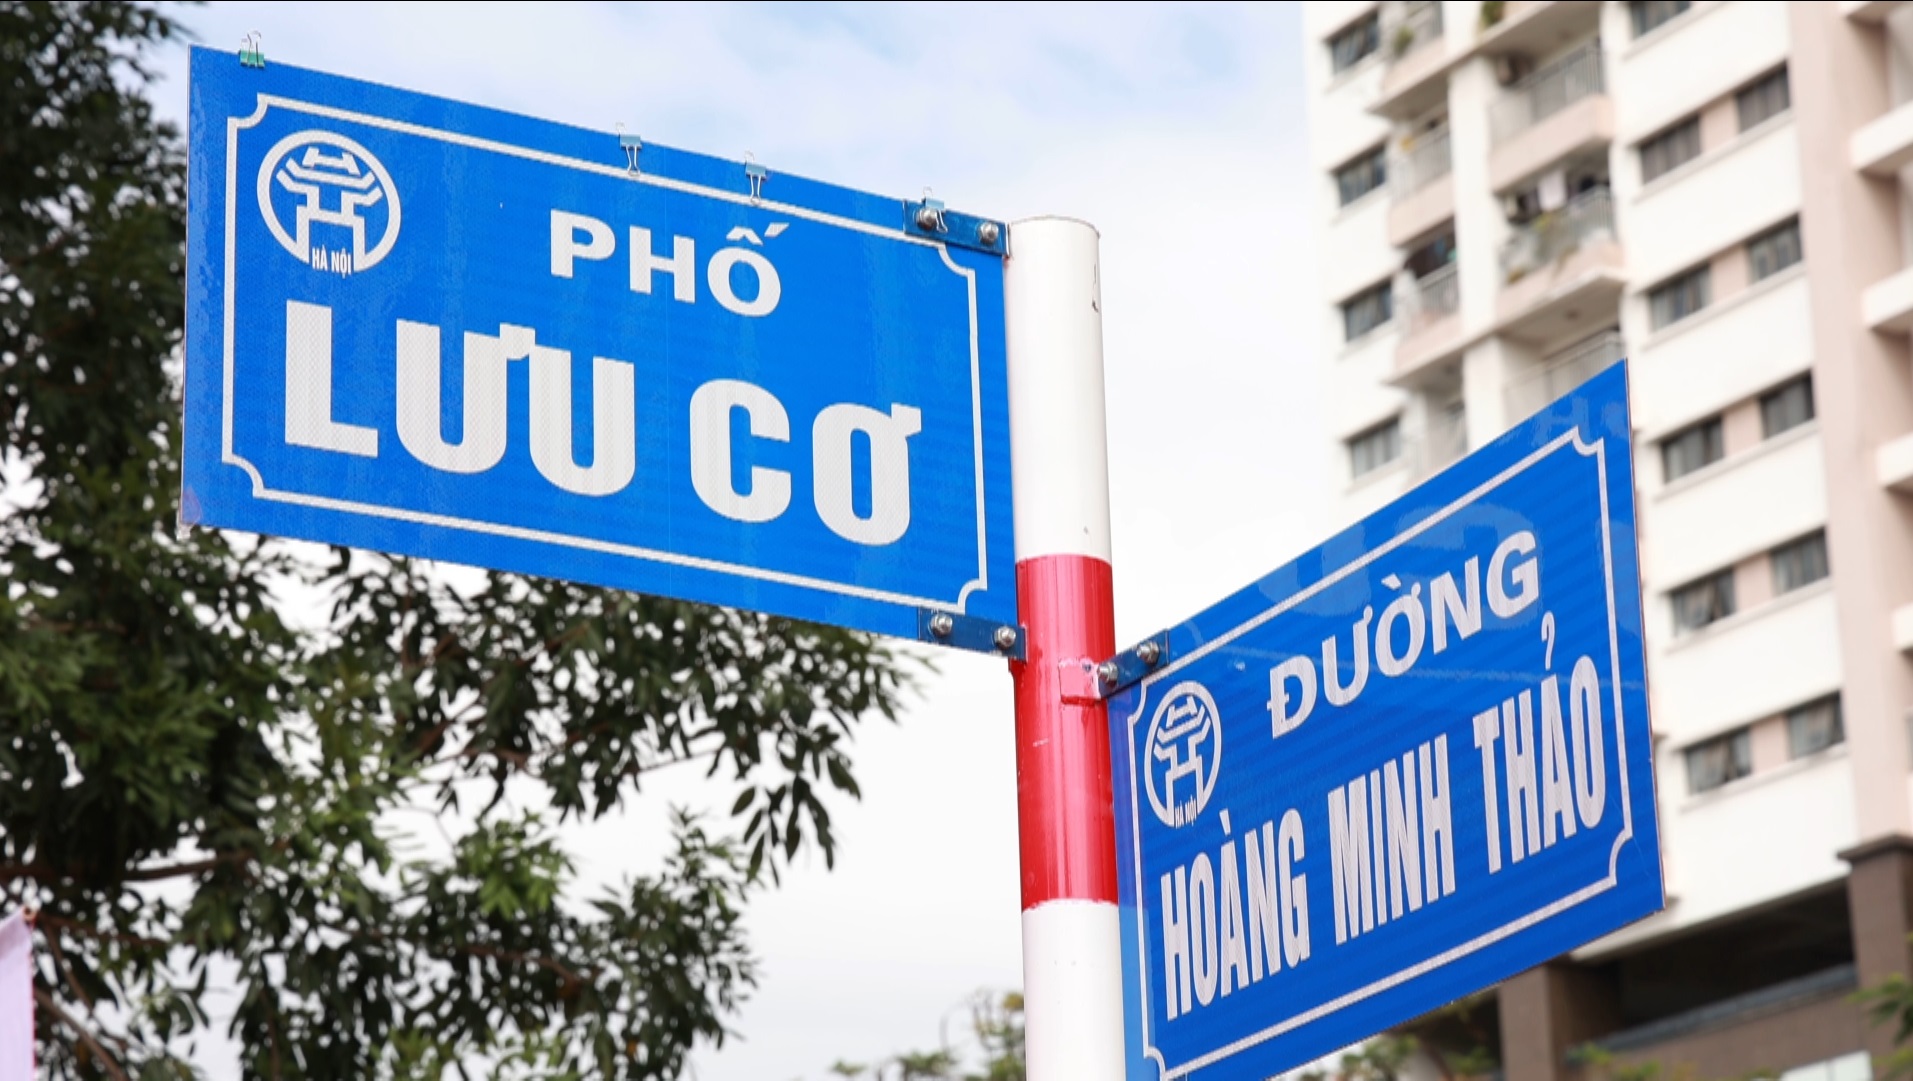 Thái sư Lưu Cơ và nhà thơ Phạm Tiến Duật chính thức được đặt tên phố tại Hà Nội - Ảnh 3.